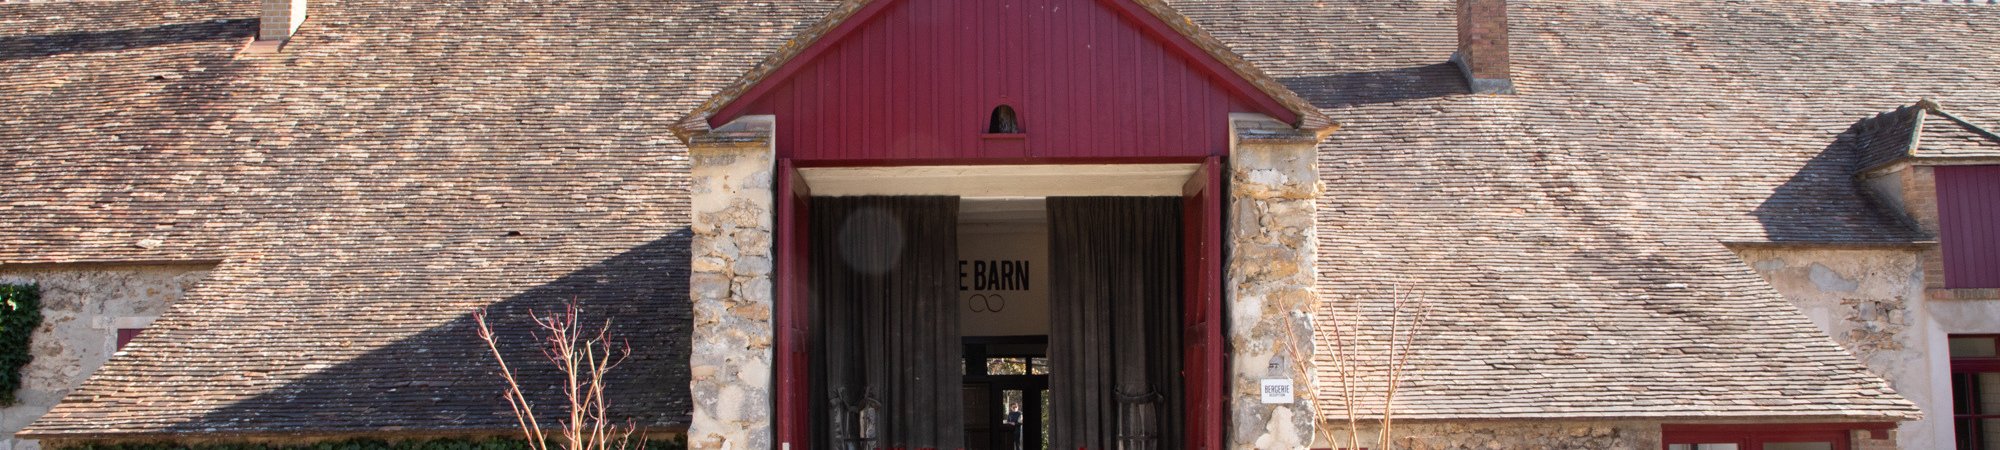 Le Barn